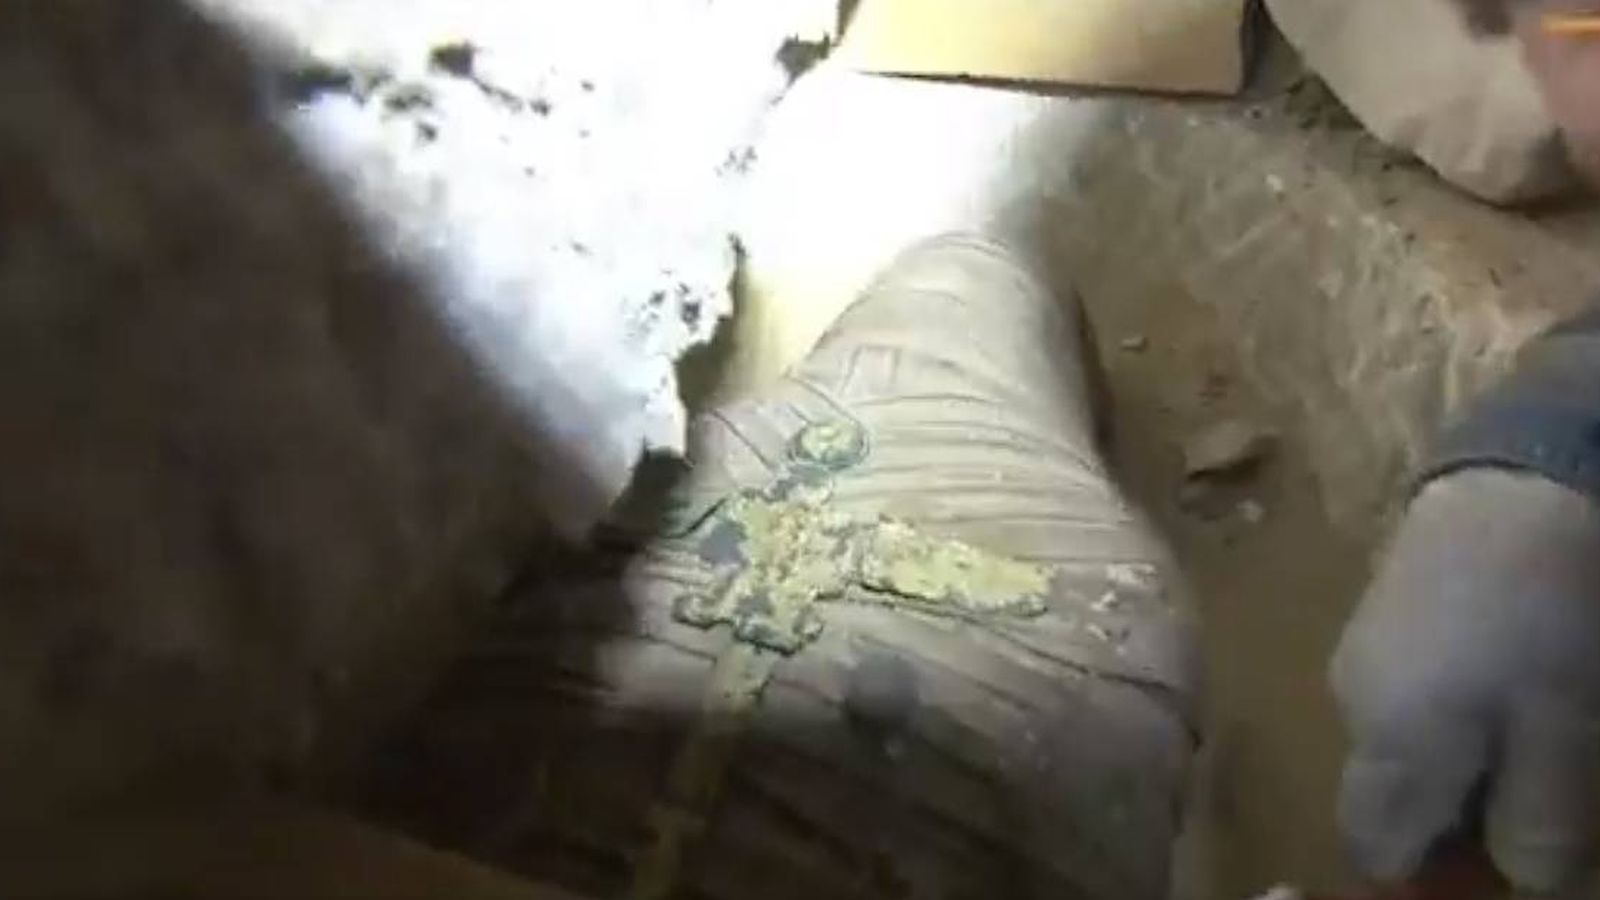 Foto: Imagen del momento en el que se encuentra la momia dentro del sarcófago. (CC)